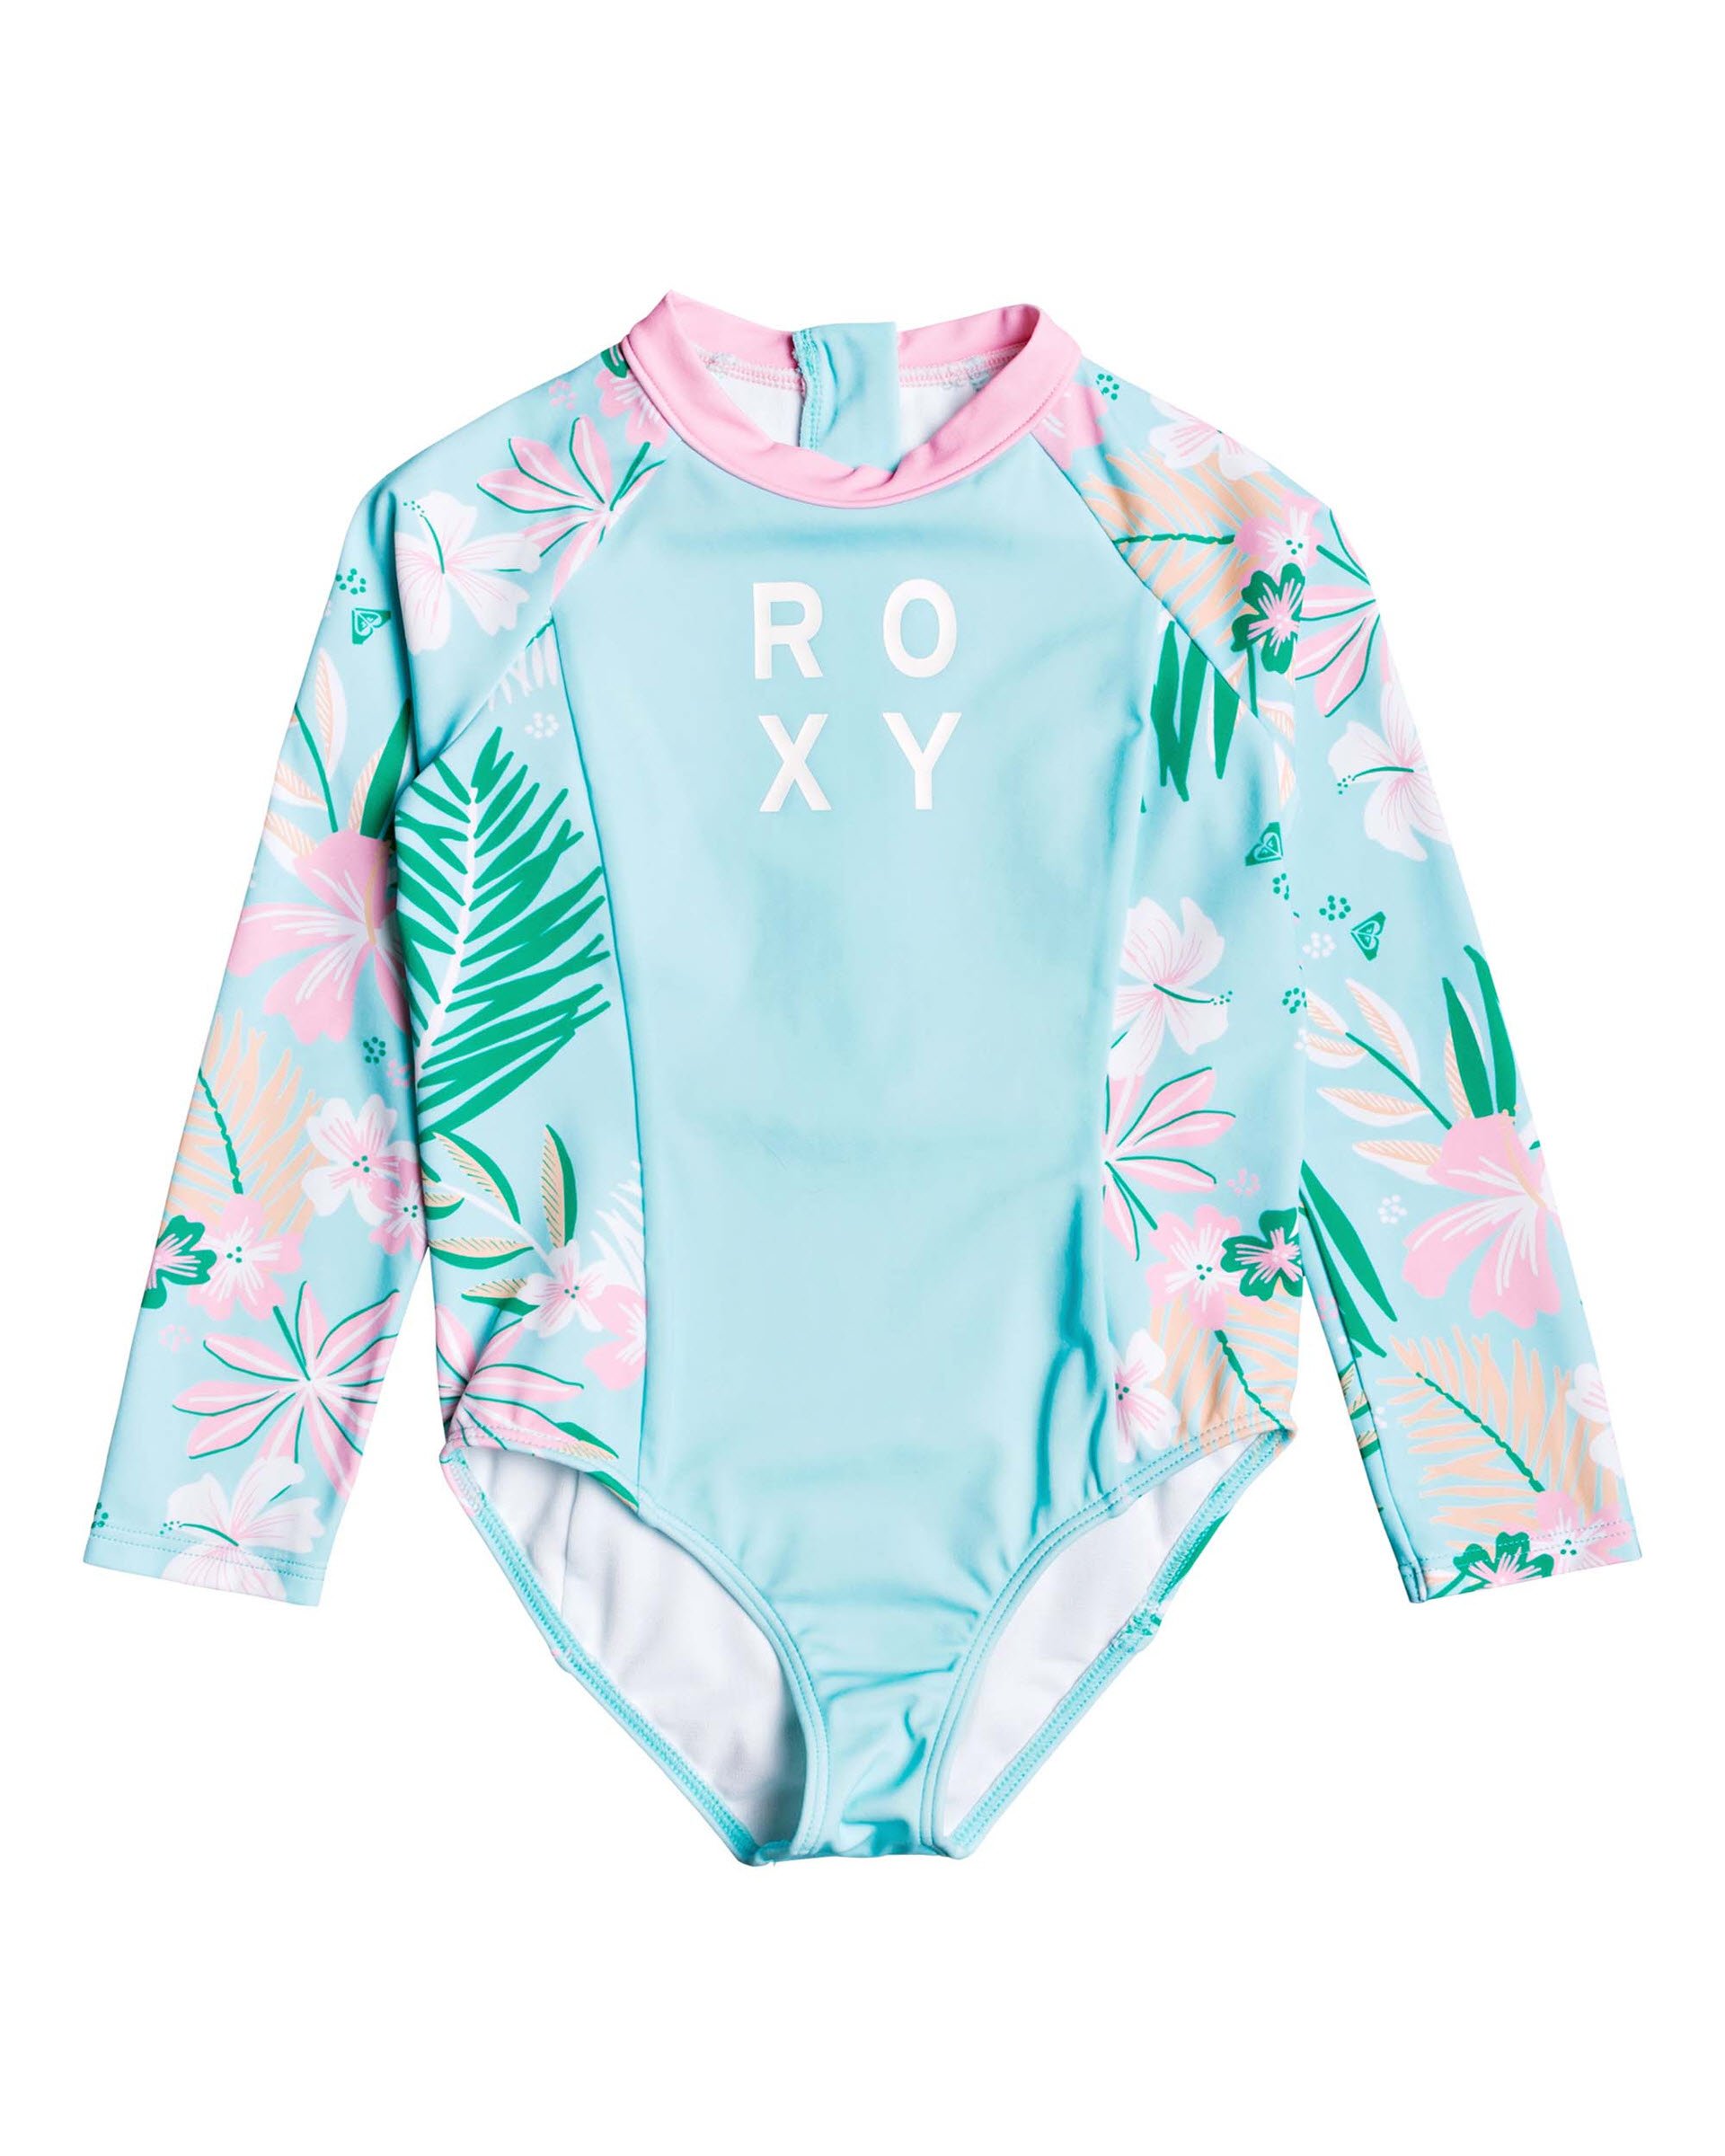 Roxy 3t swimsuit